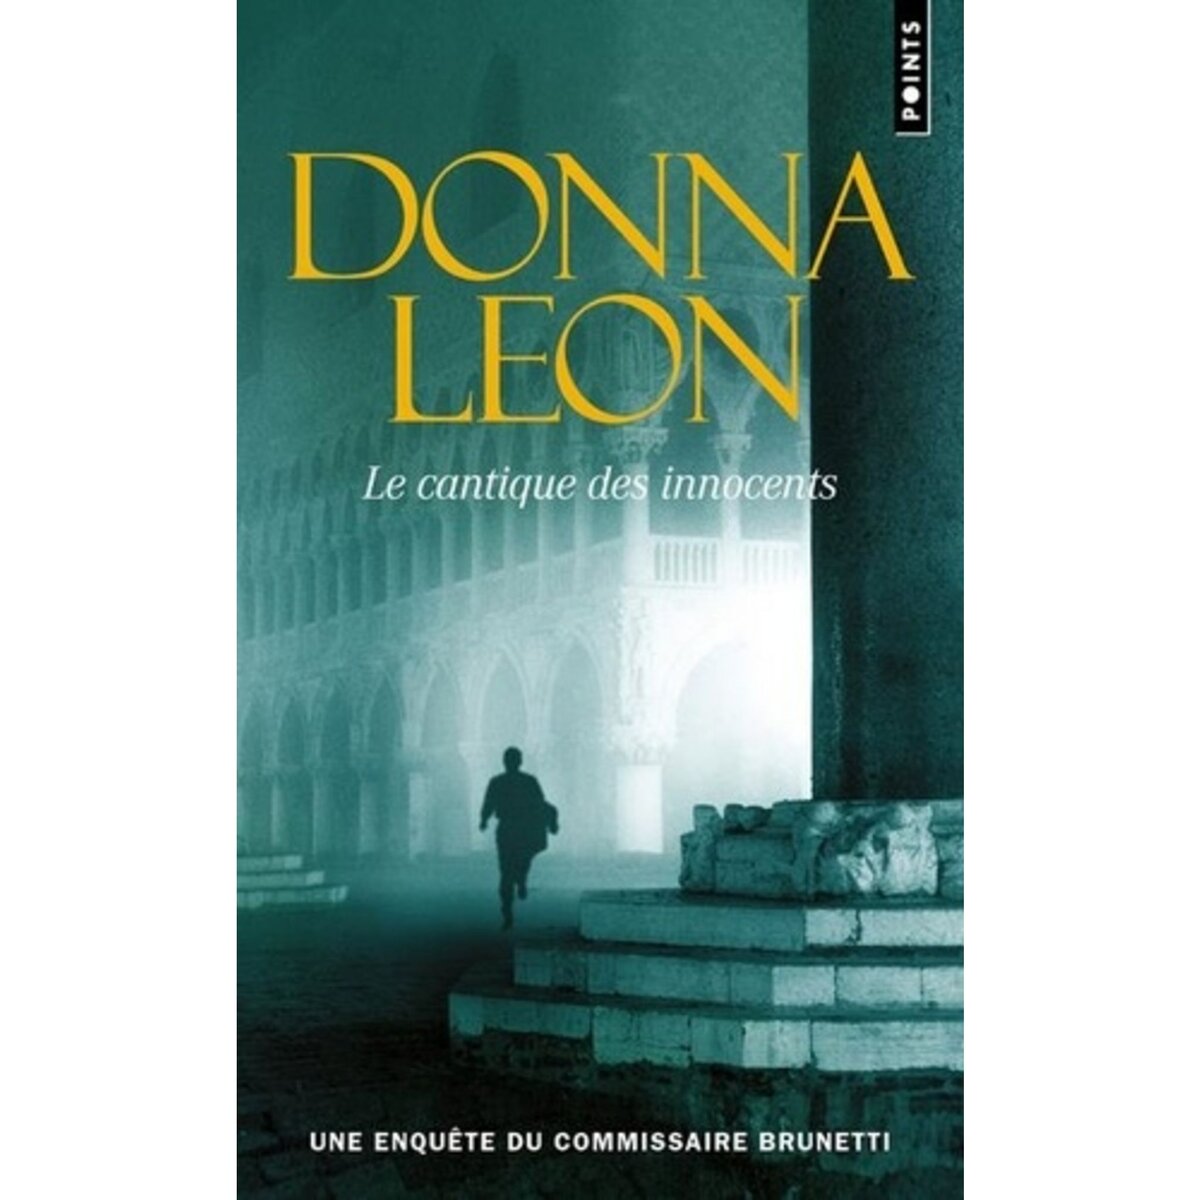  LE CANTIQUE DES INNOCENTS, Leon Donna